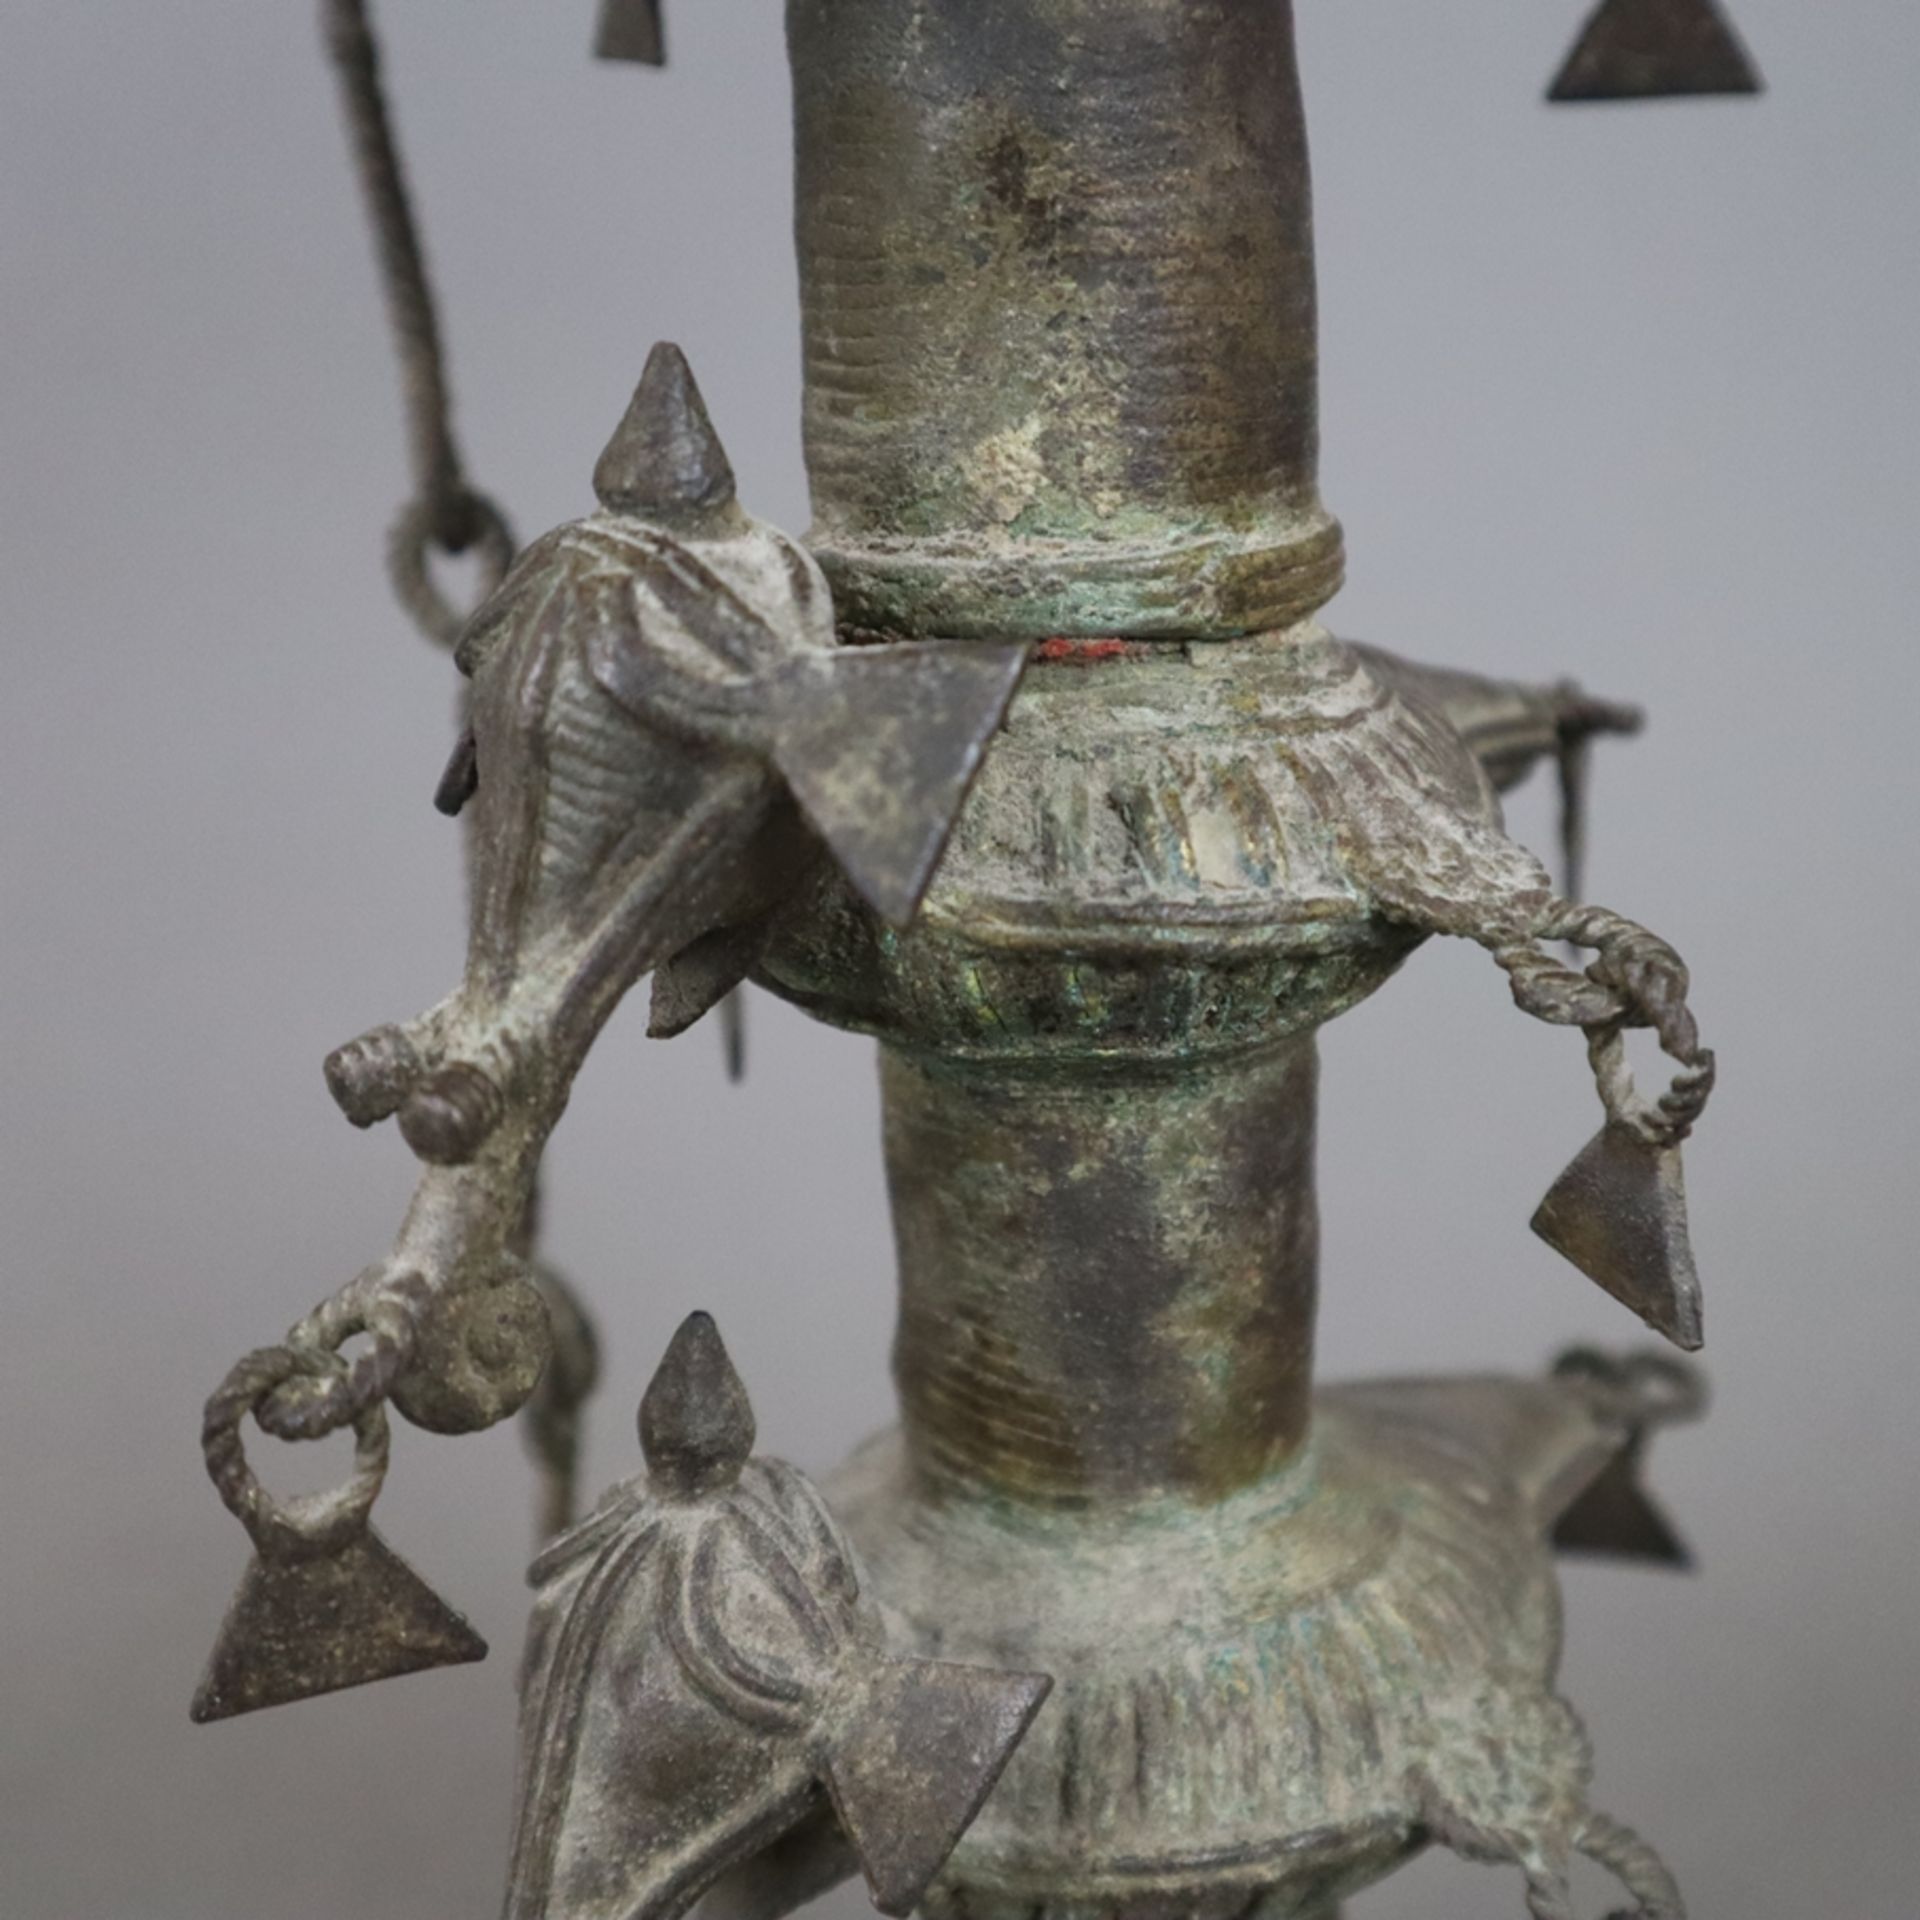 Hohe Öllampe - Indien, Bastar-Region, Bronze mit Alterspatina, über gewölbtem Fuß gegliederter Scha - Bild 6 aus 9